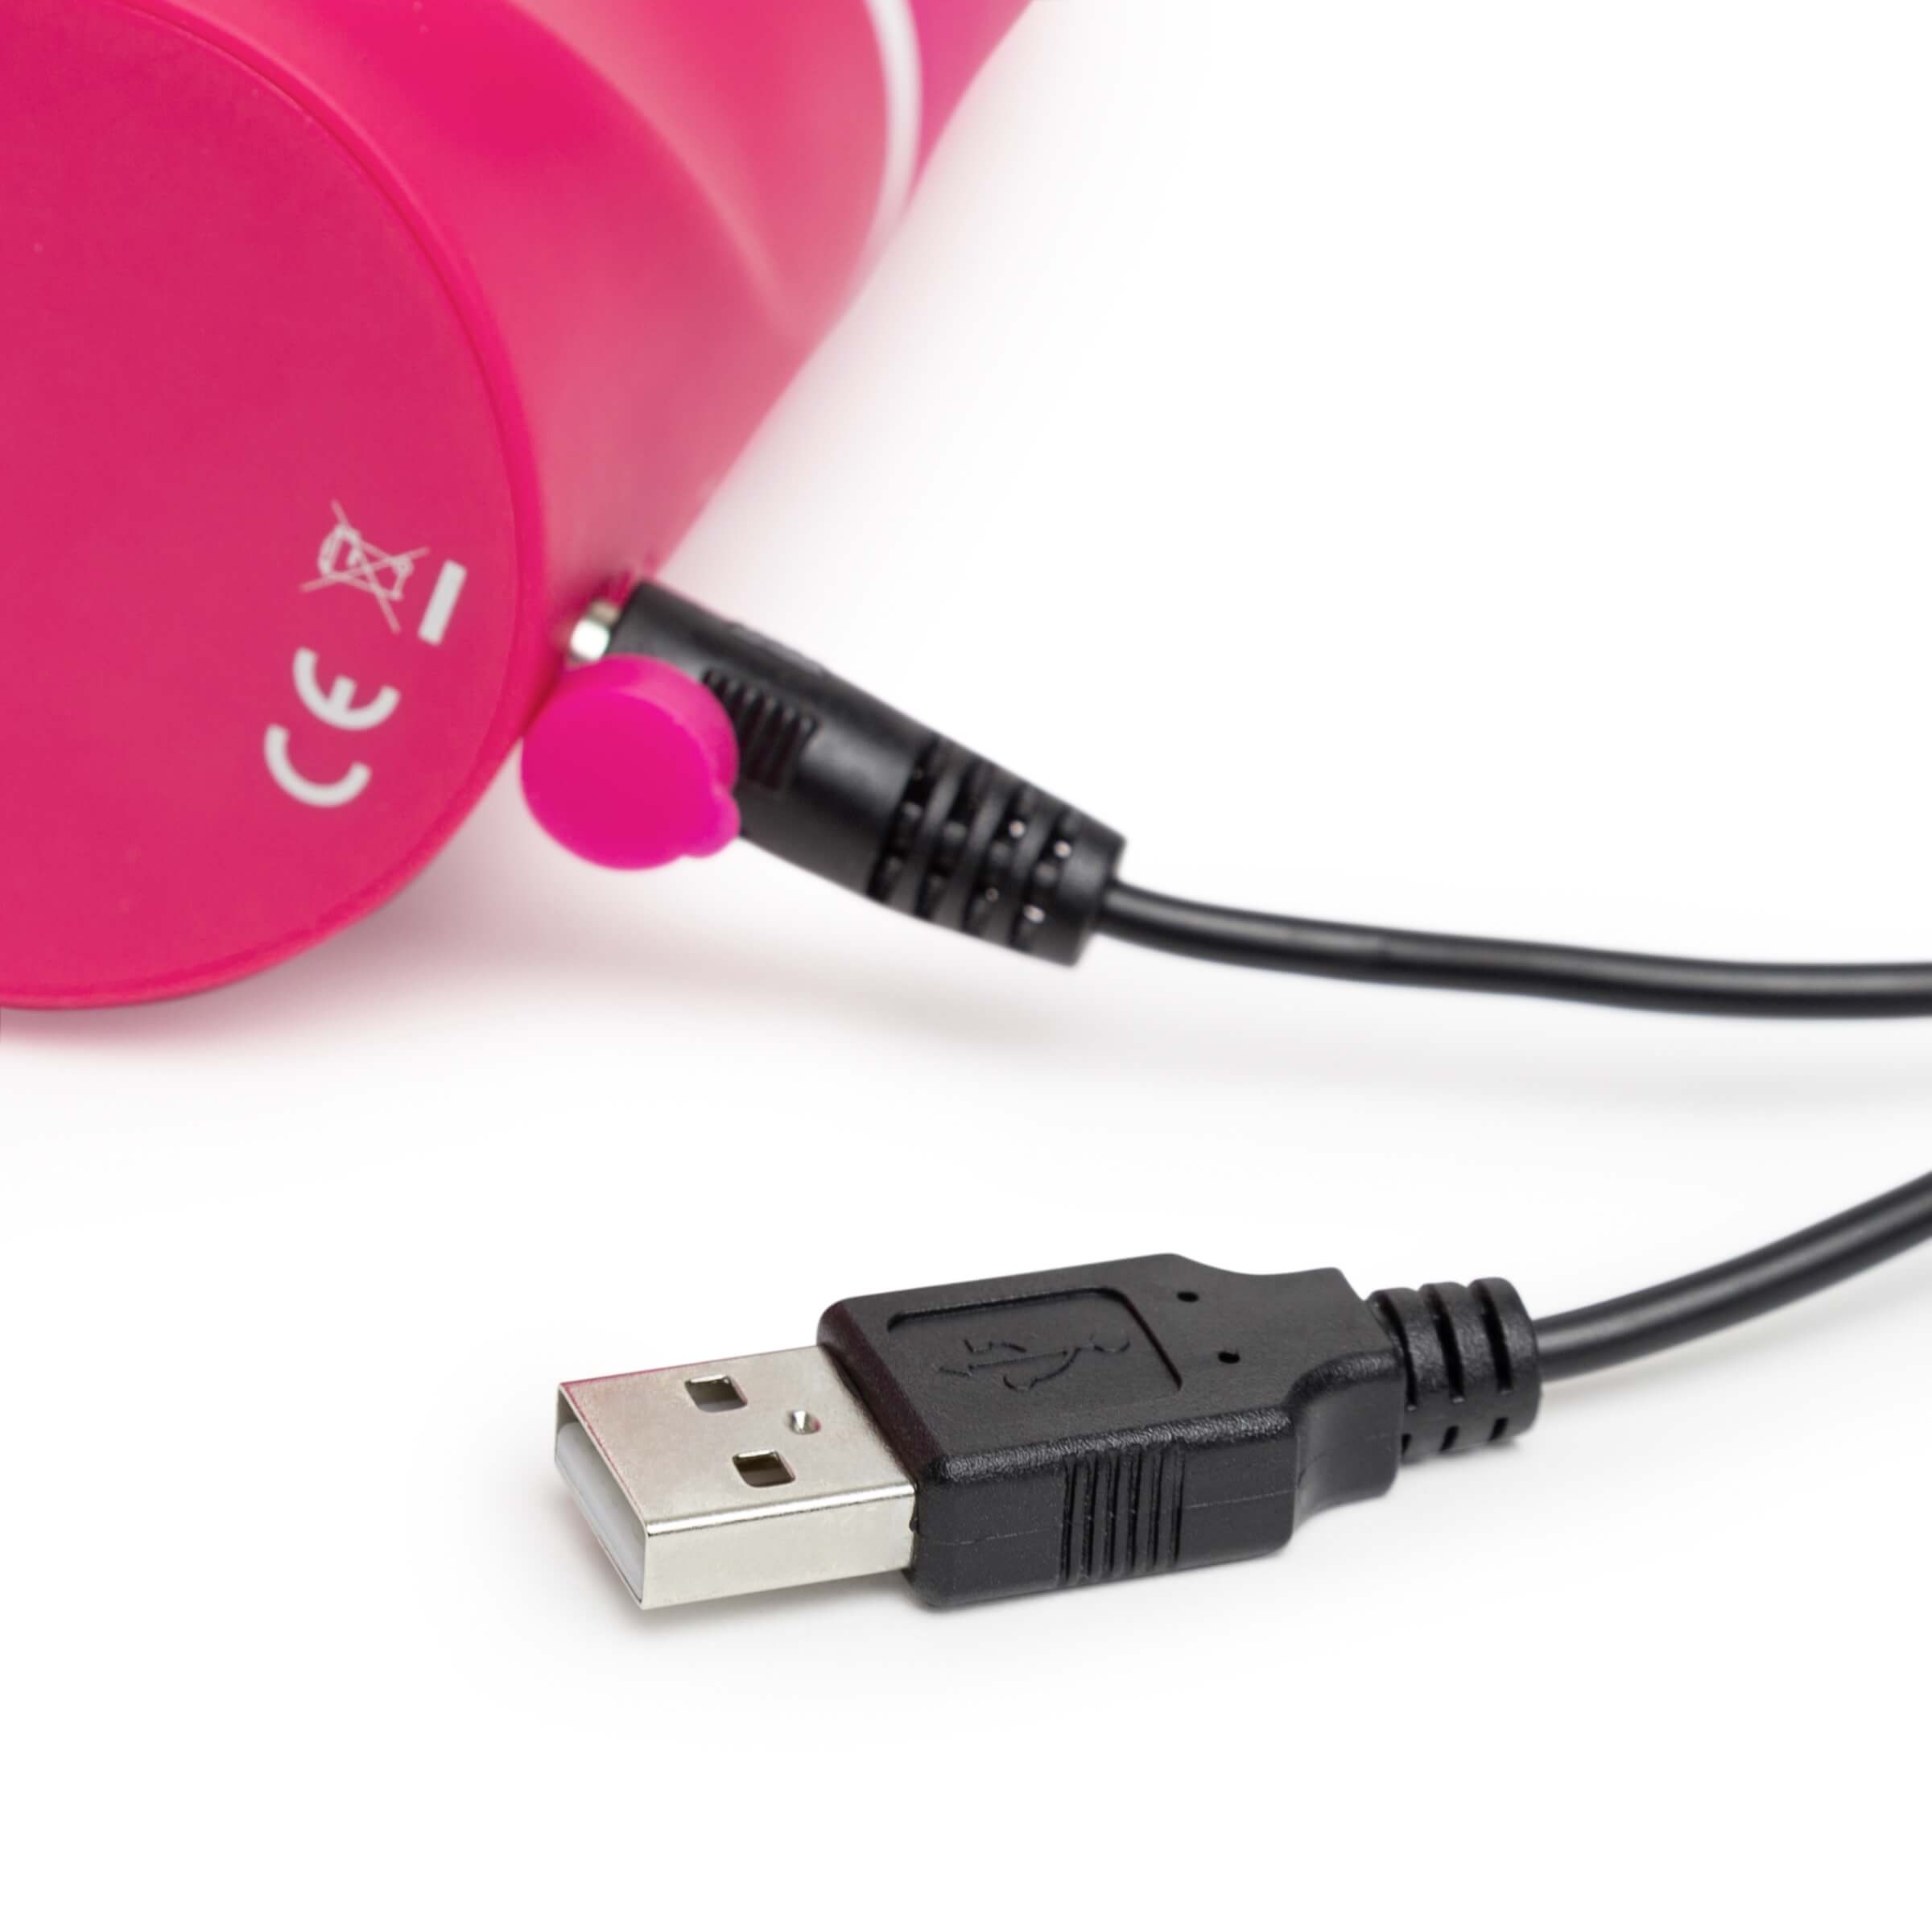 Happyrabbit G-spot - vízálló, akkus csiklókaros vibrátor (pink) kép